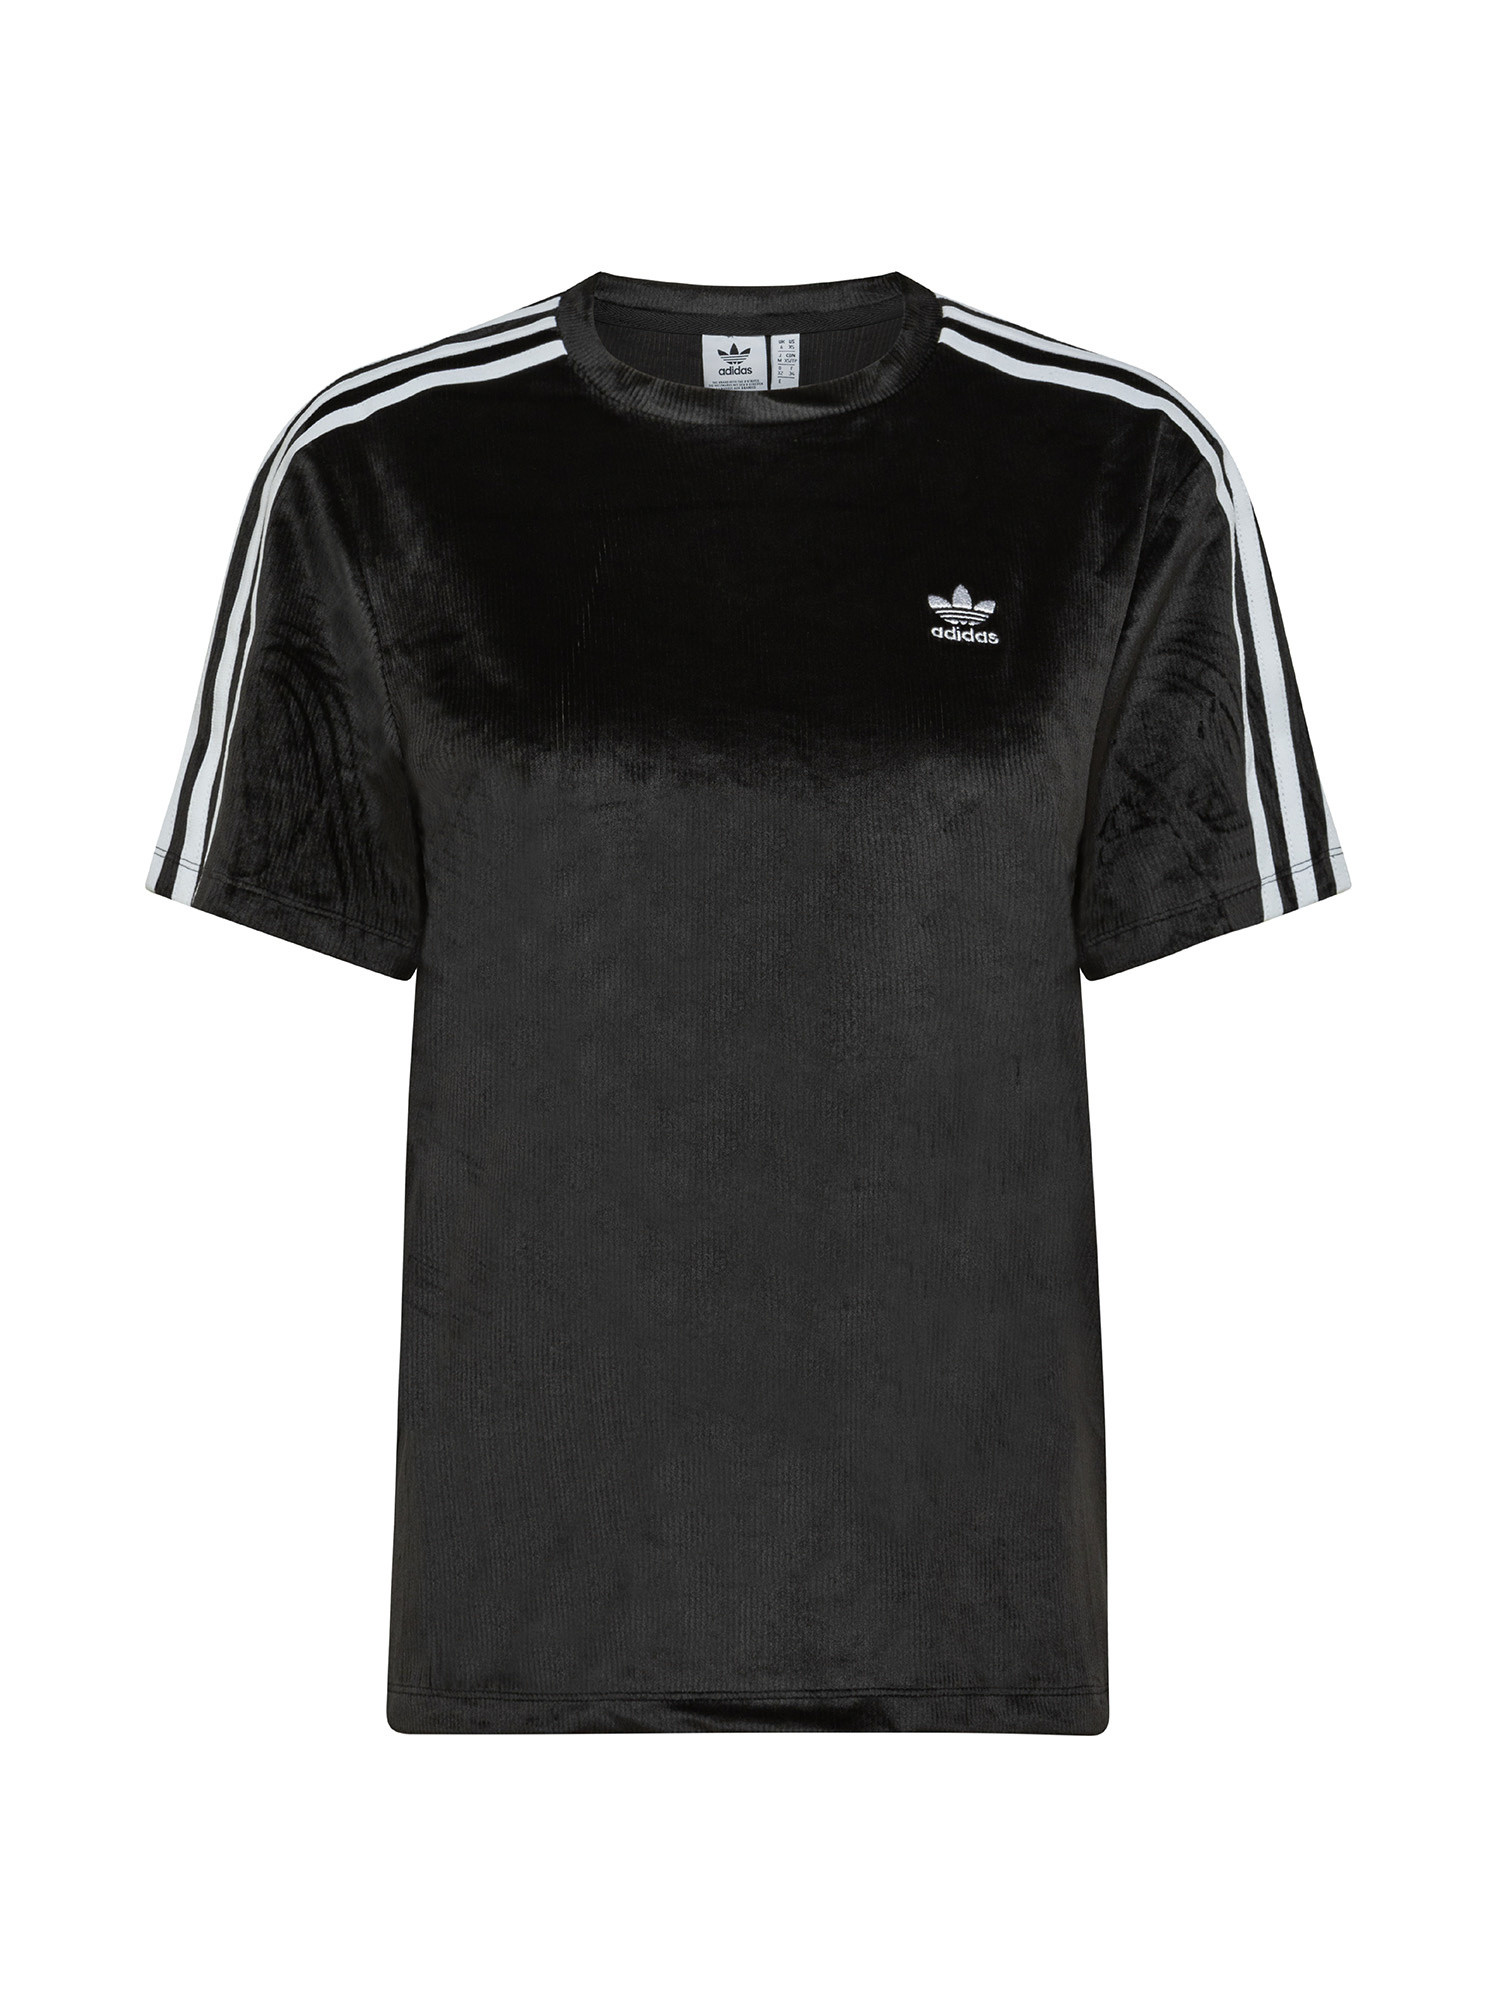 Essentials T-Shirt, Black, large image number 0